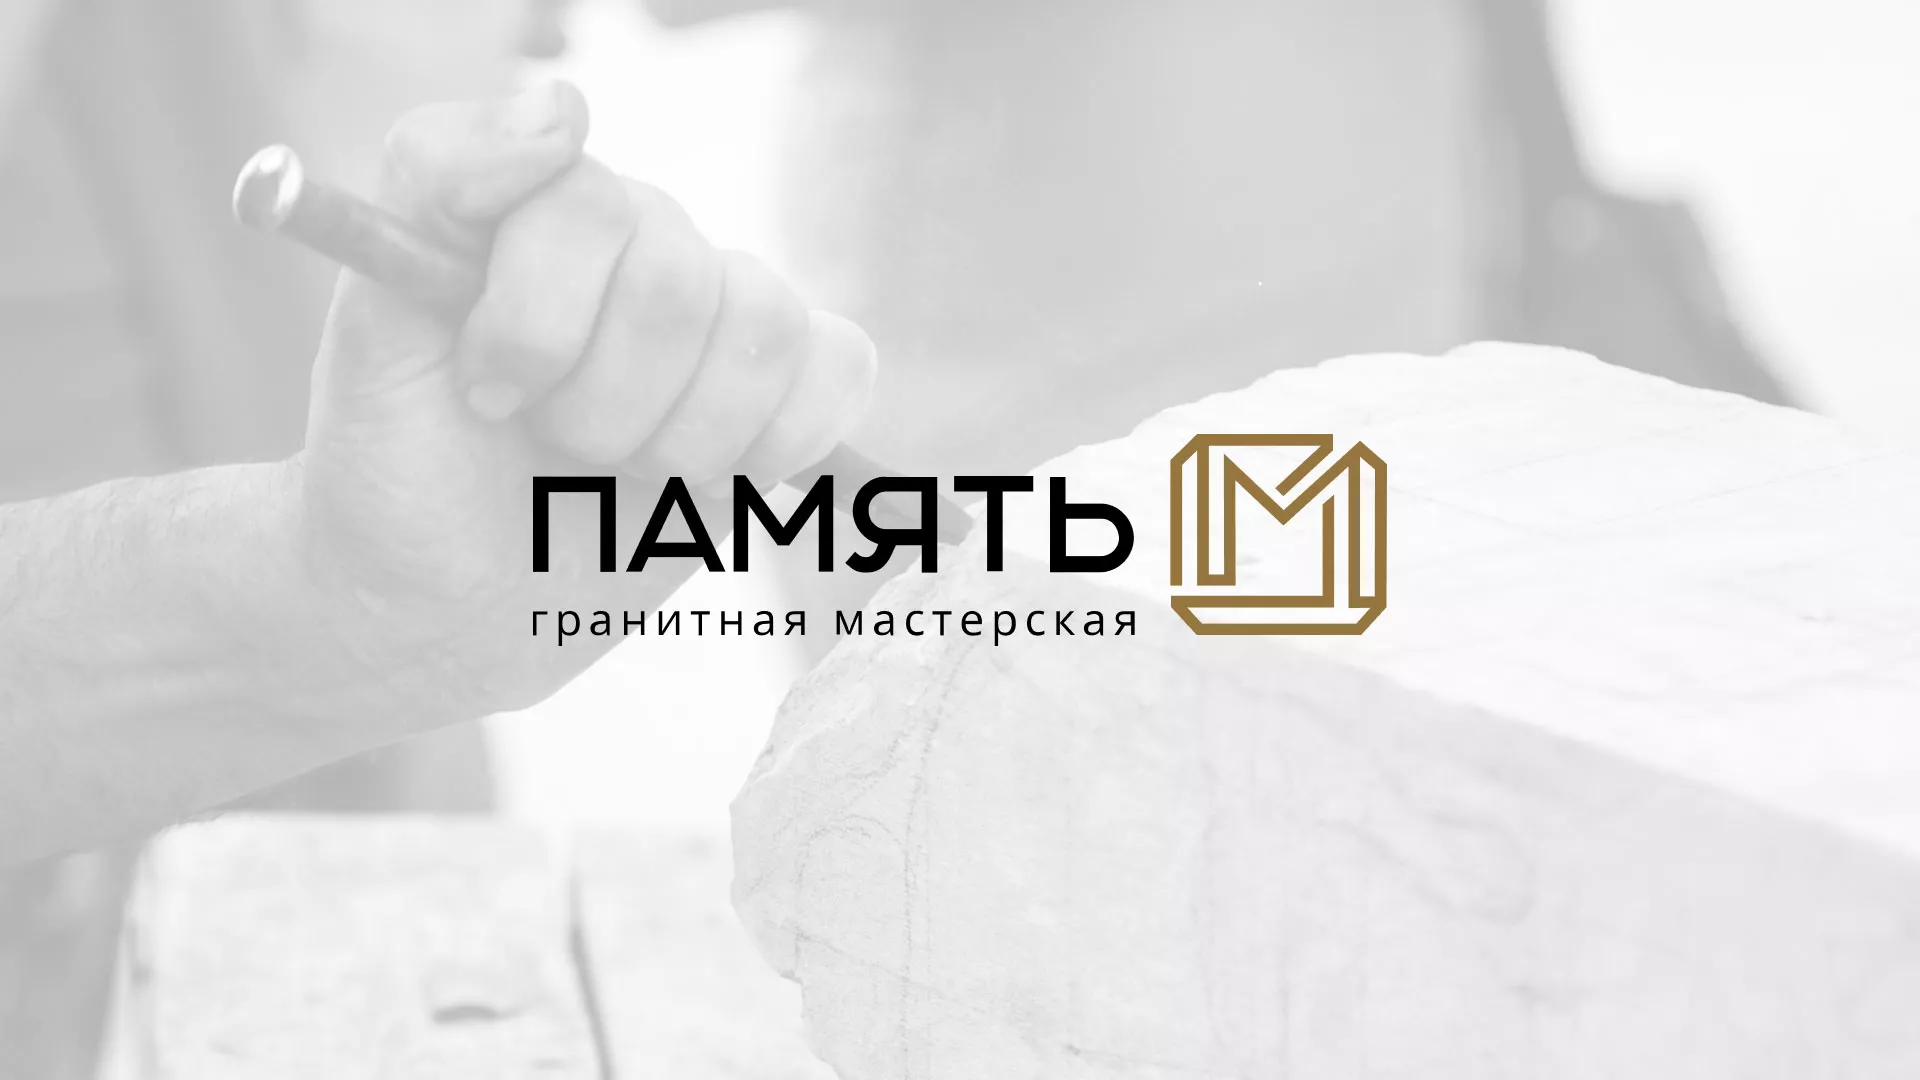 Разработка логотипа и сайта компании «Память-М» в Нарткале